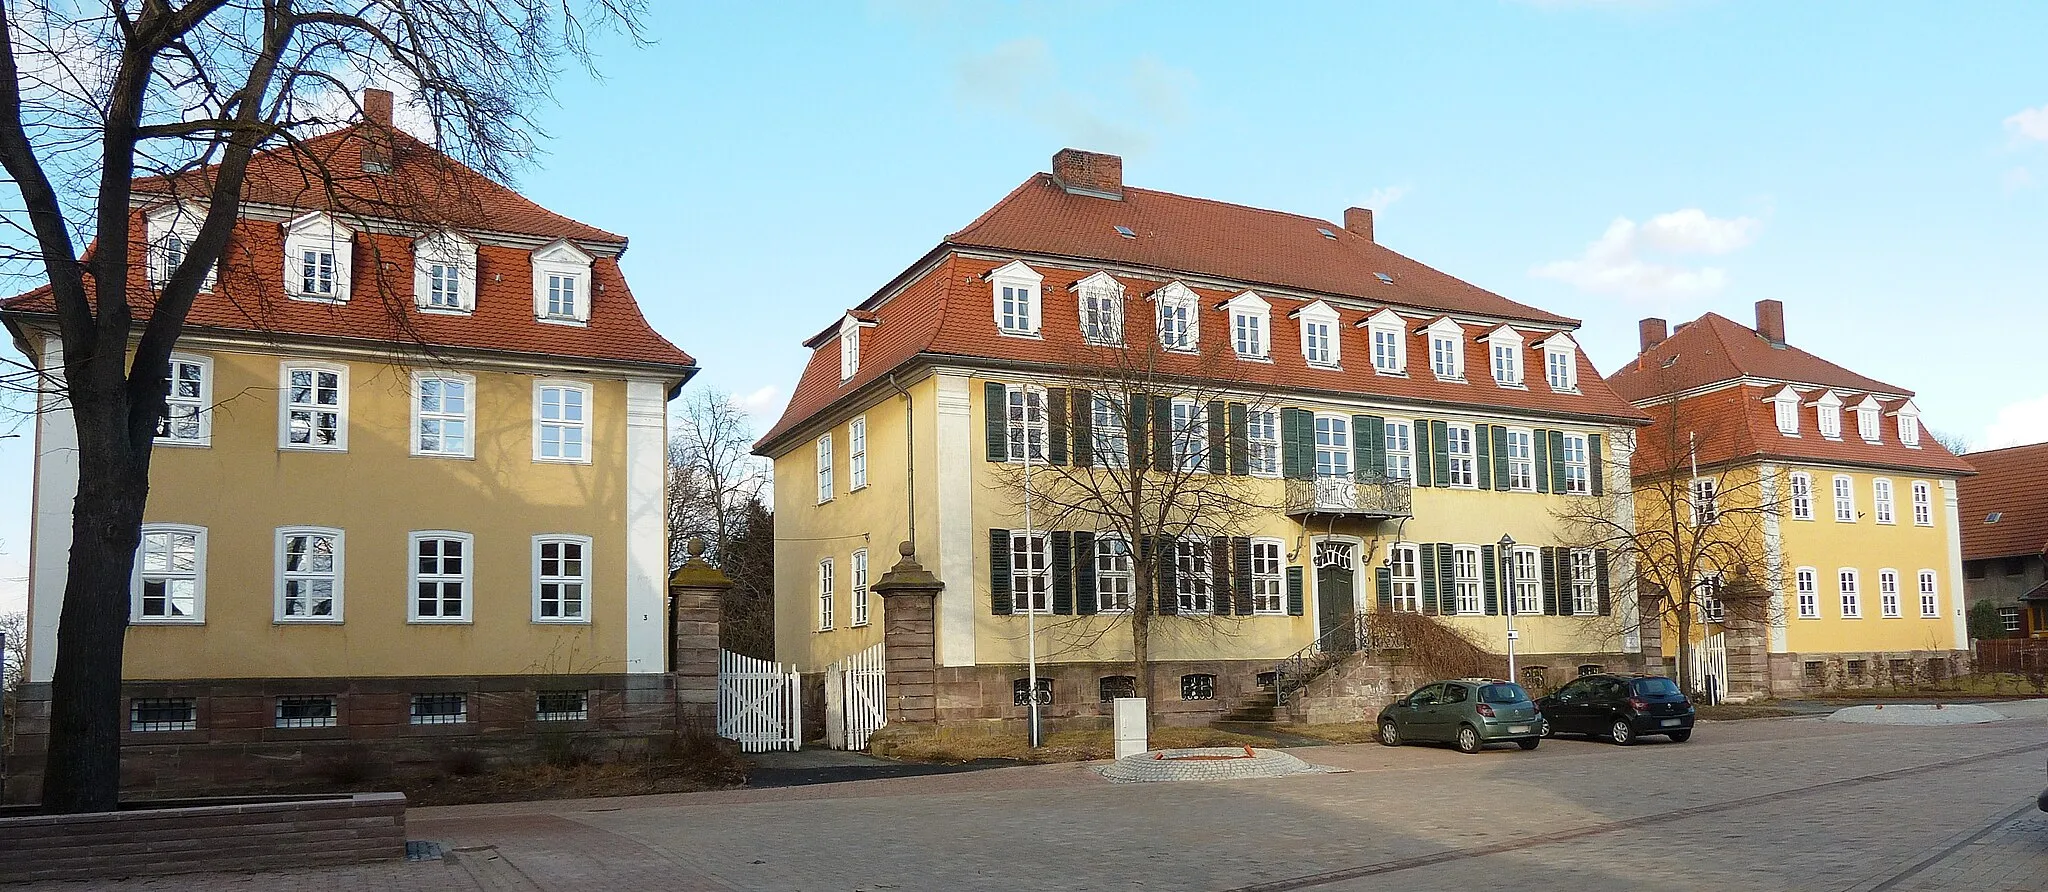 Photo showing: Amtshaus mit flankierenden Pavillons des ehemaligen hessischen Jagdschlosses in Bovenden, Niedersachsen, erbaut 1777 bis 1790